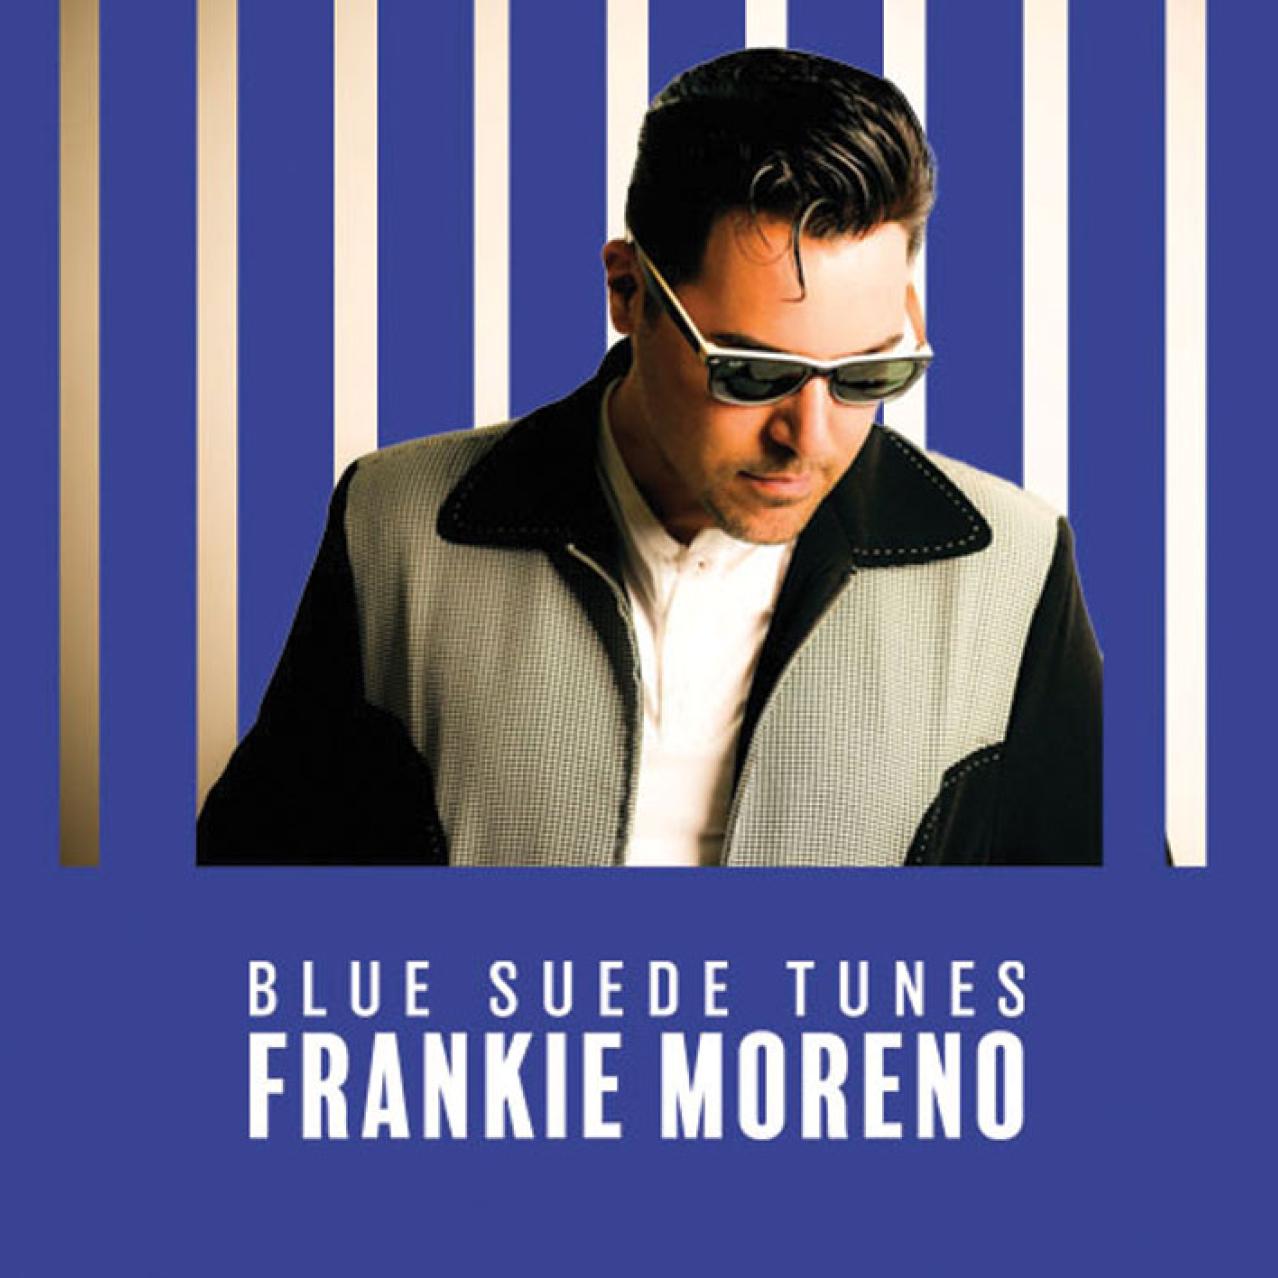 Blue Suede Tunes - Frankie Moreno